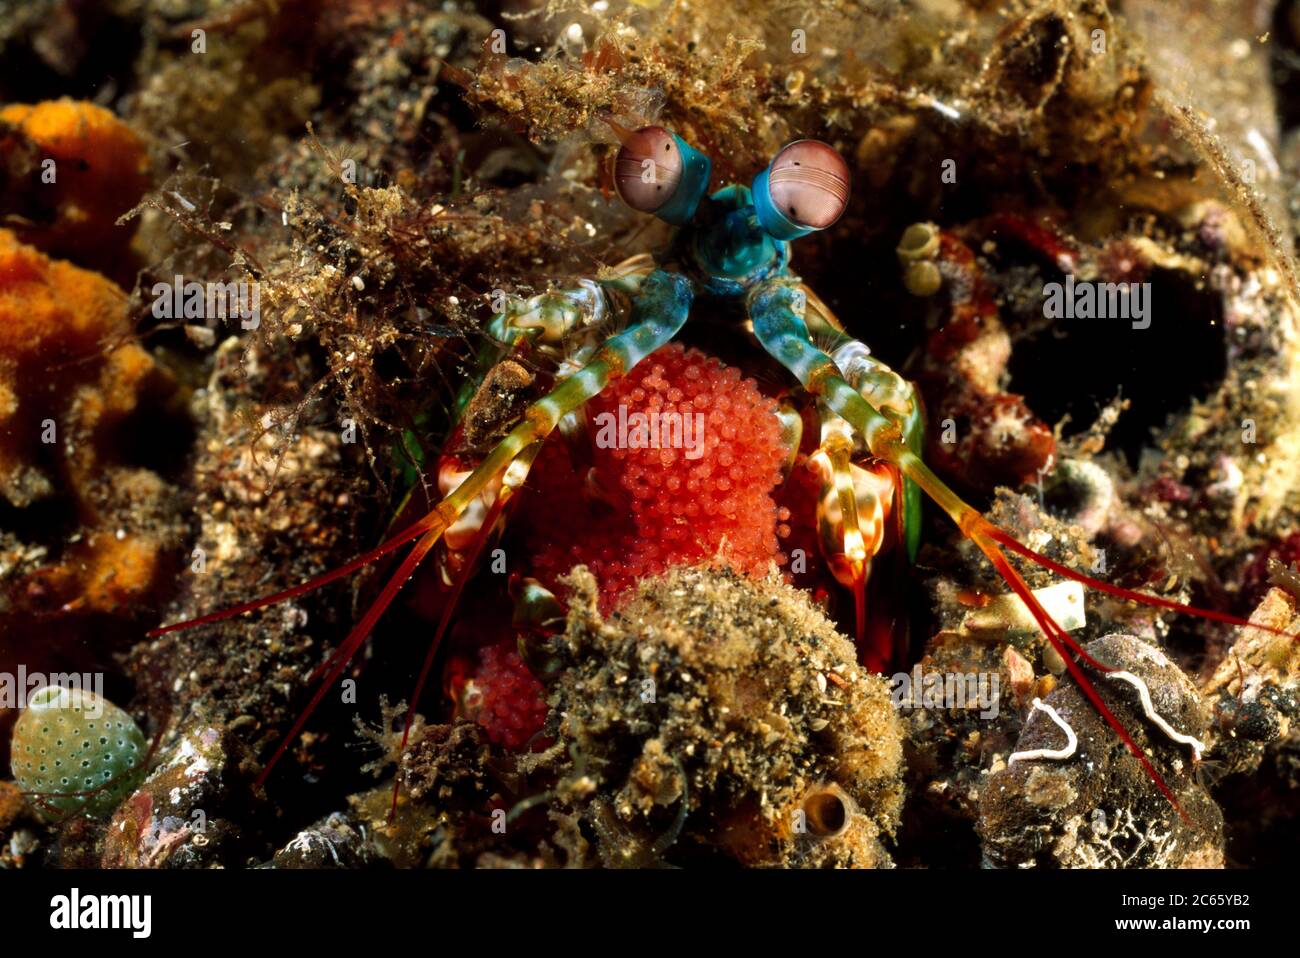 Pfau Mantis Garnelen Erwachsene Weibchen mit Eiern (Odontodactylus scyllarus) - Erwachsene Weibchen haben in der Regel eine Oliven-oder bräunliche Körperfarbe. Diese Tiere bauen Höhlen in schrobenem Untergrund und Sand, die den Bau mit kleinen Stücken von toten Korallen, Schale und Felsen auskleiden. Stockfoto